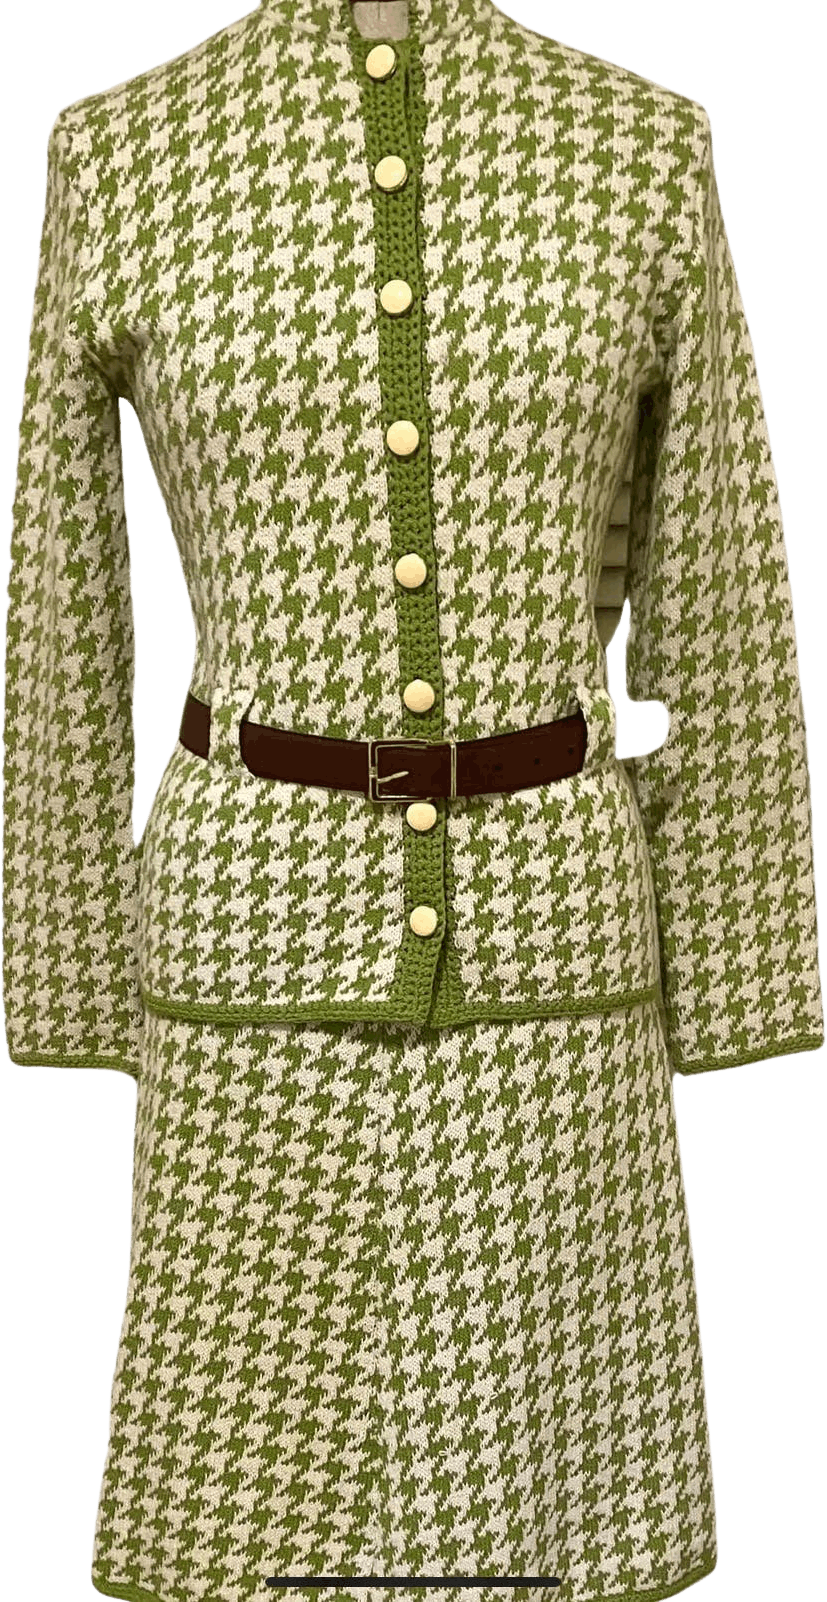 Houndstooth Skirt Suit | Business kleidung damen, Kleidung, Tolle kleider